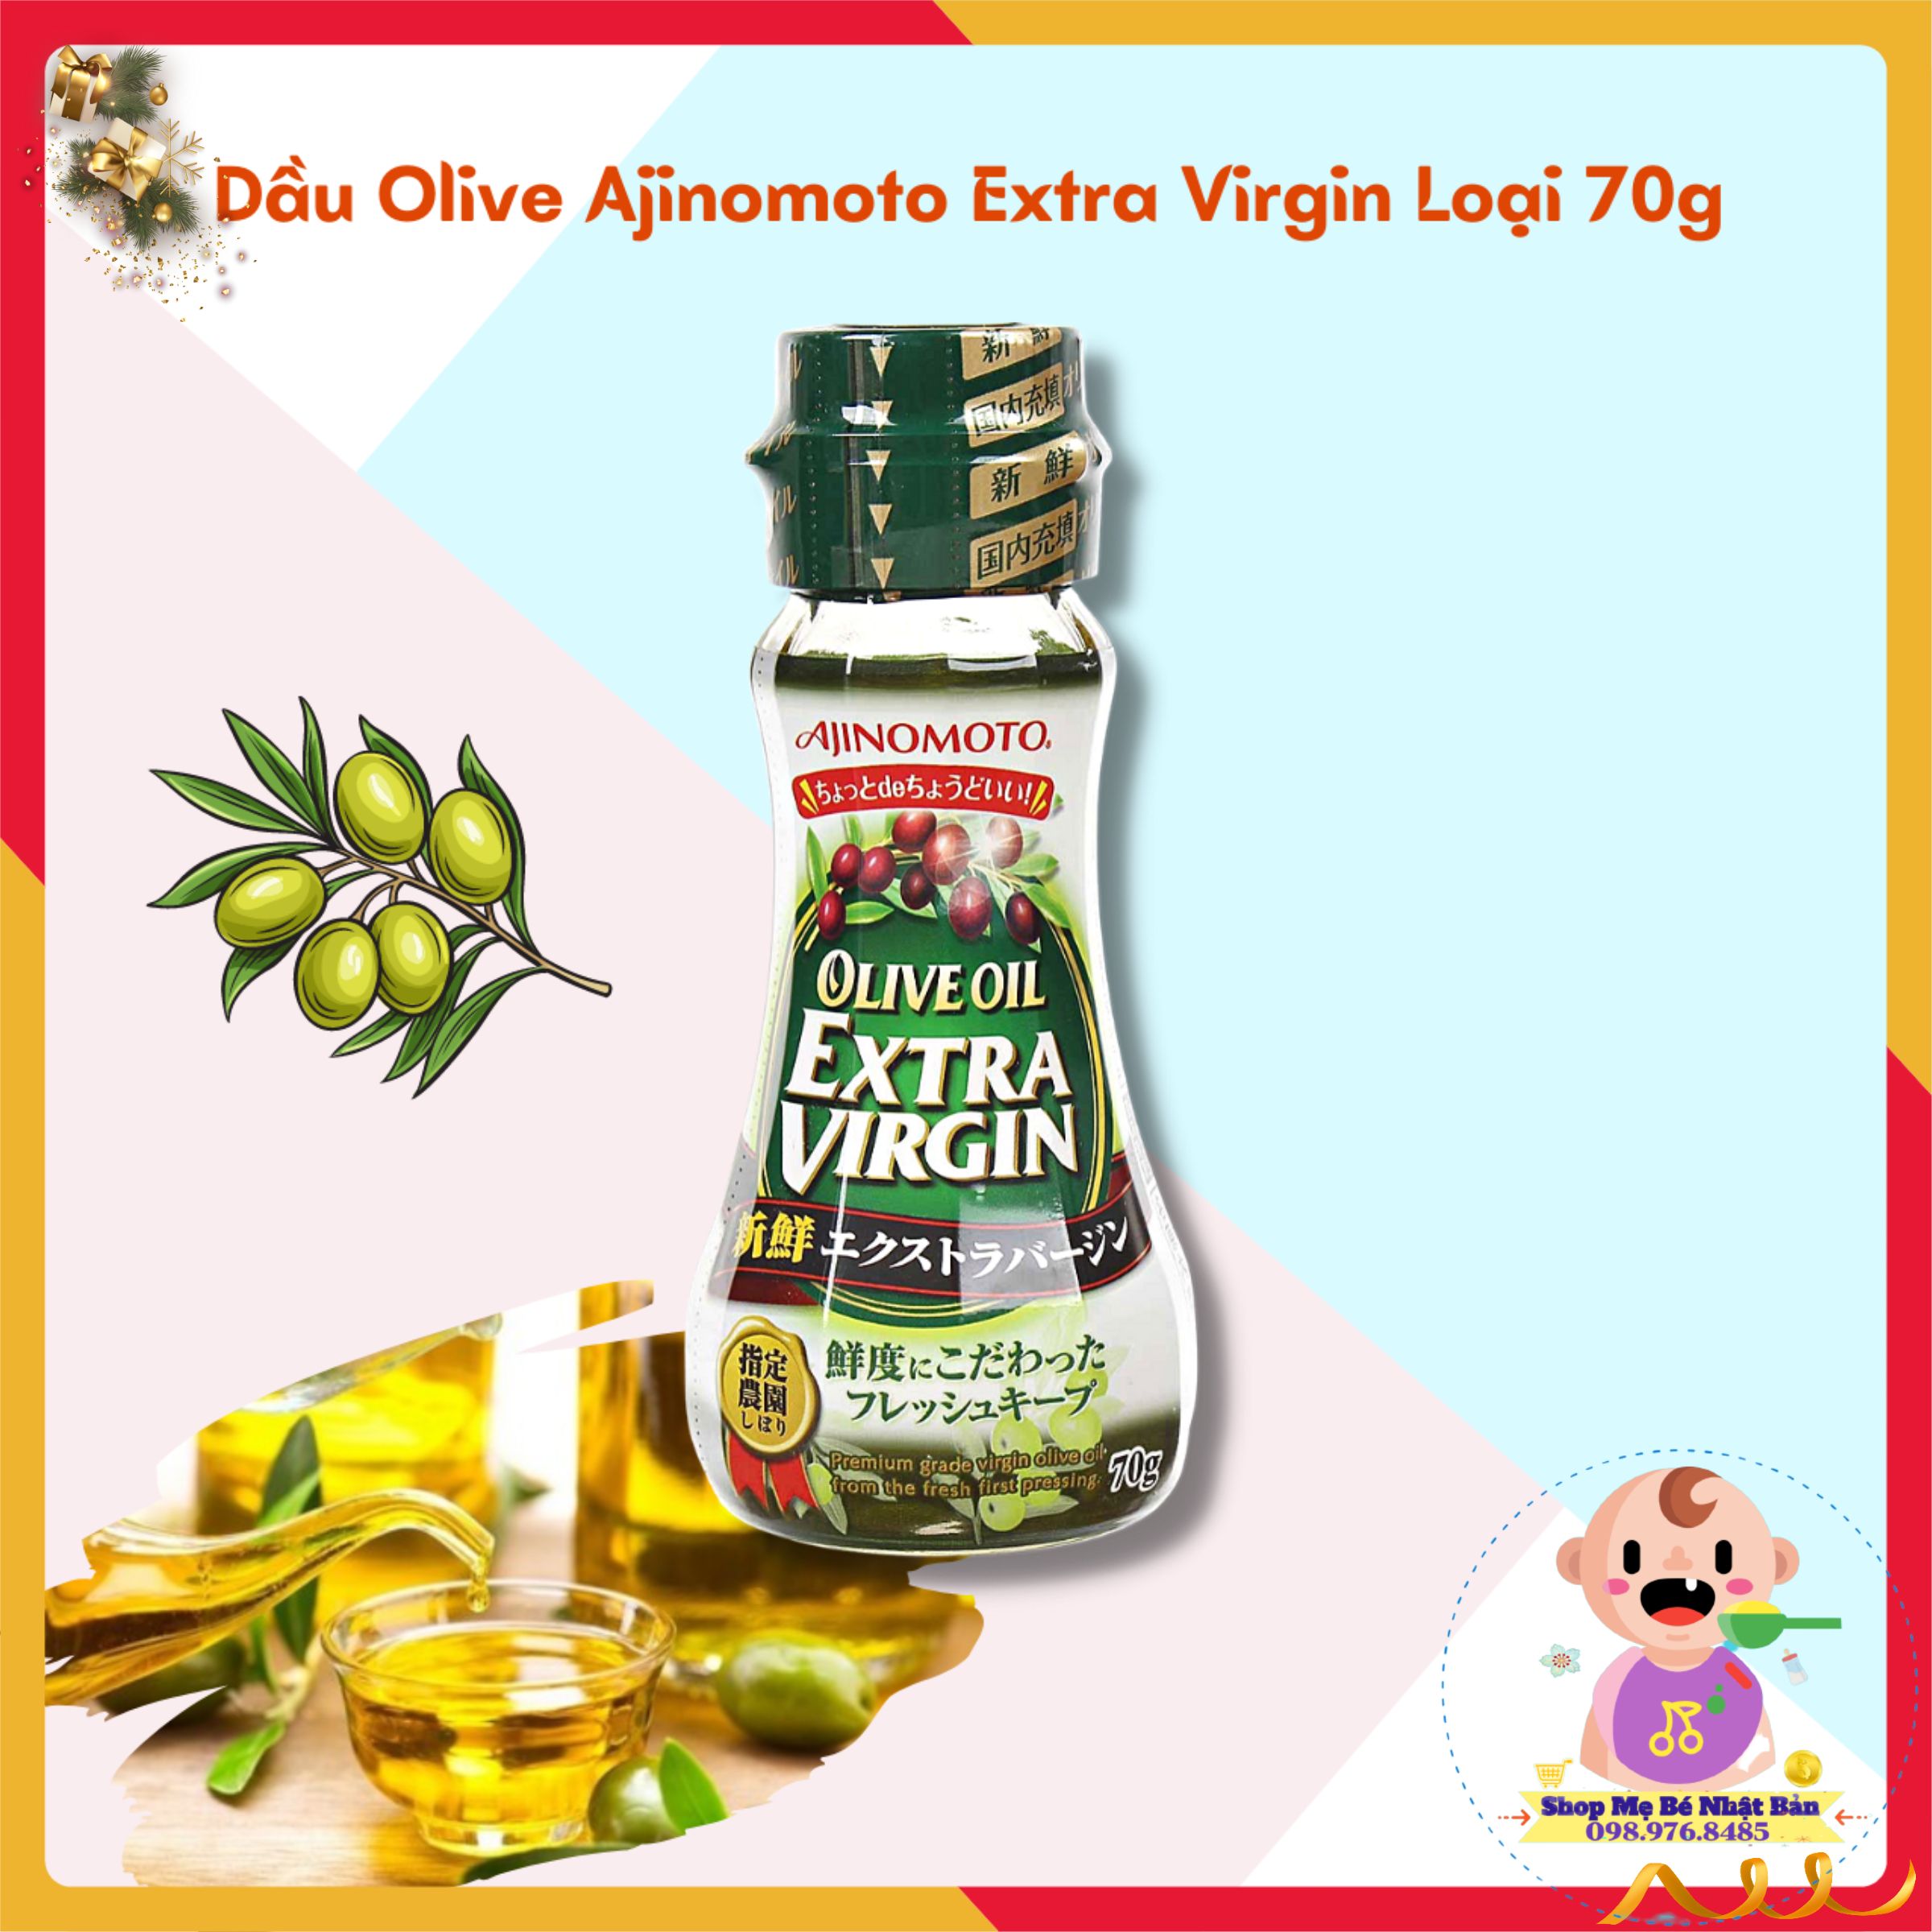 Dầu Olive Ajinomoto Extra Virgin Nguyên Chất Từ Nhật Bản - Chai 70g